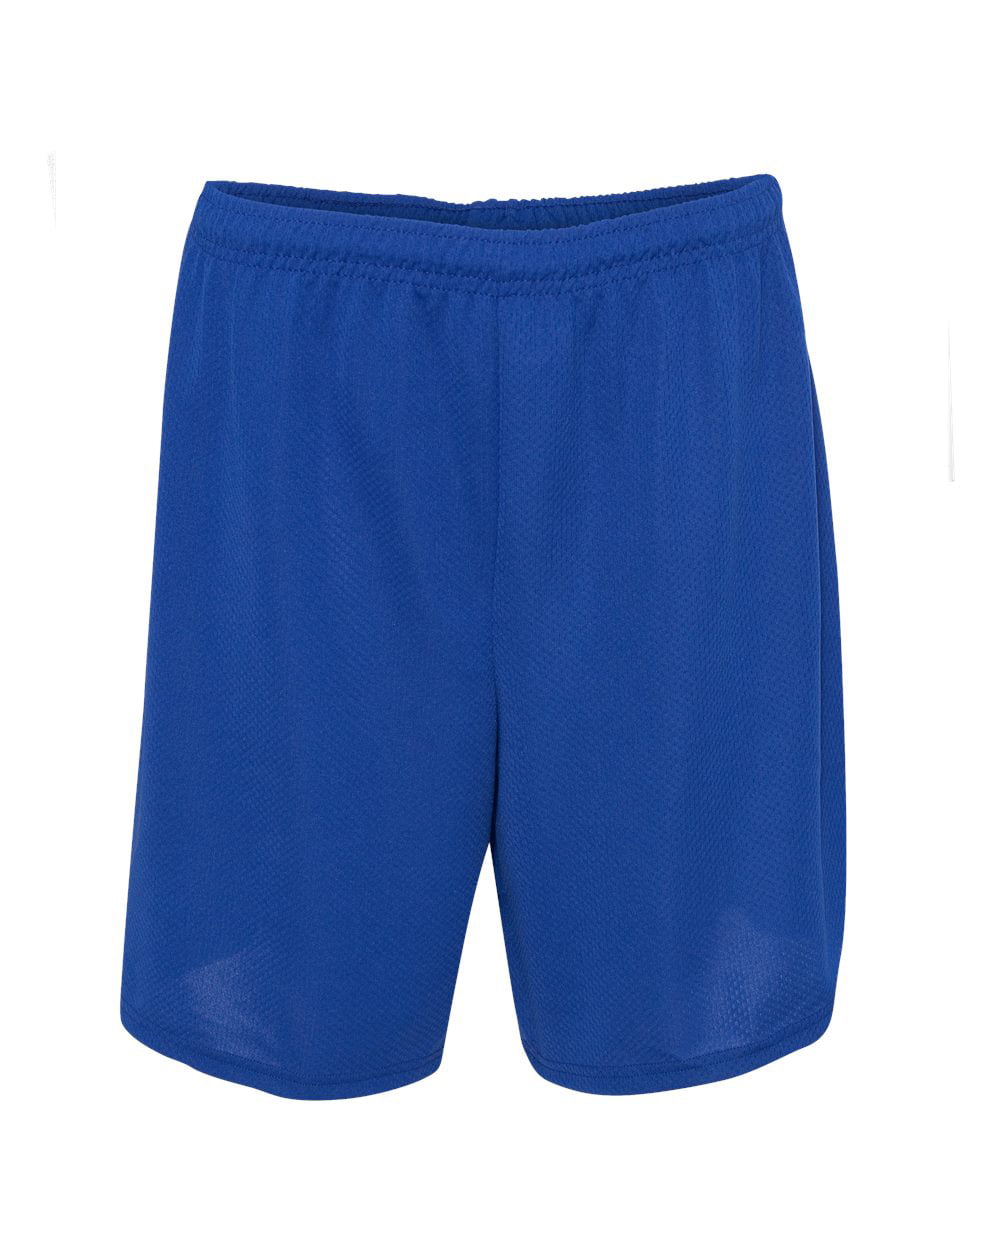 Download C2 Sport - C2 Sport - MMF - 7" Mock Mesh Shorts - Walmart.com - Walmart.com